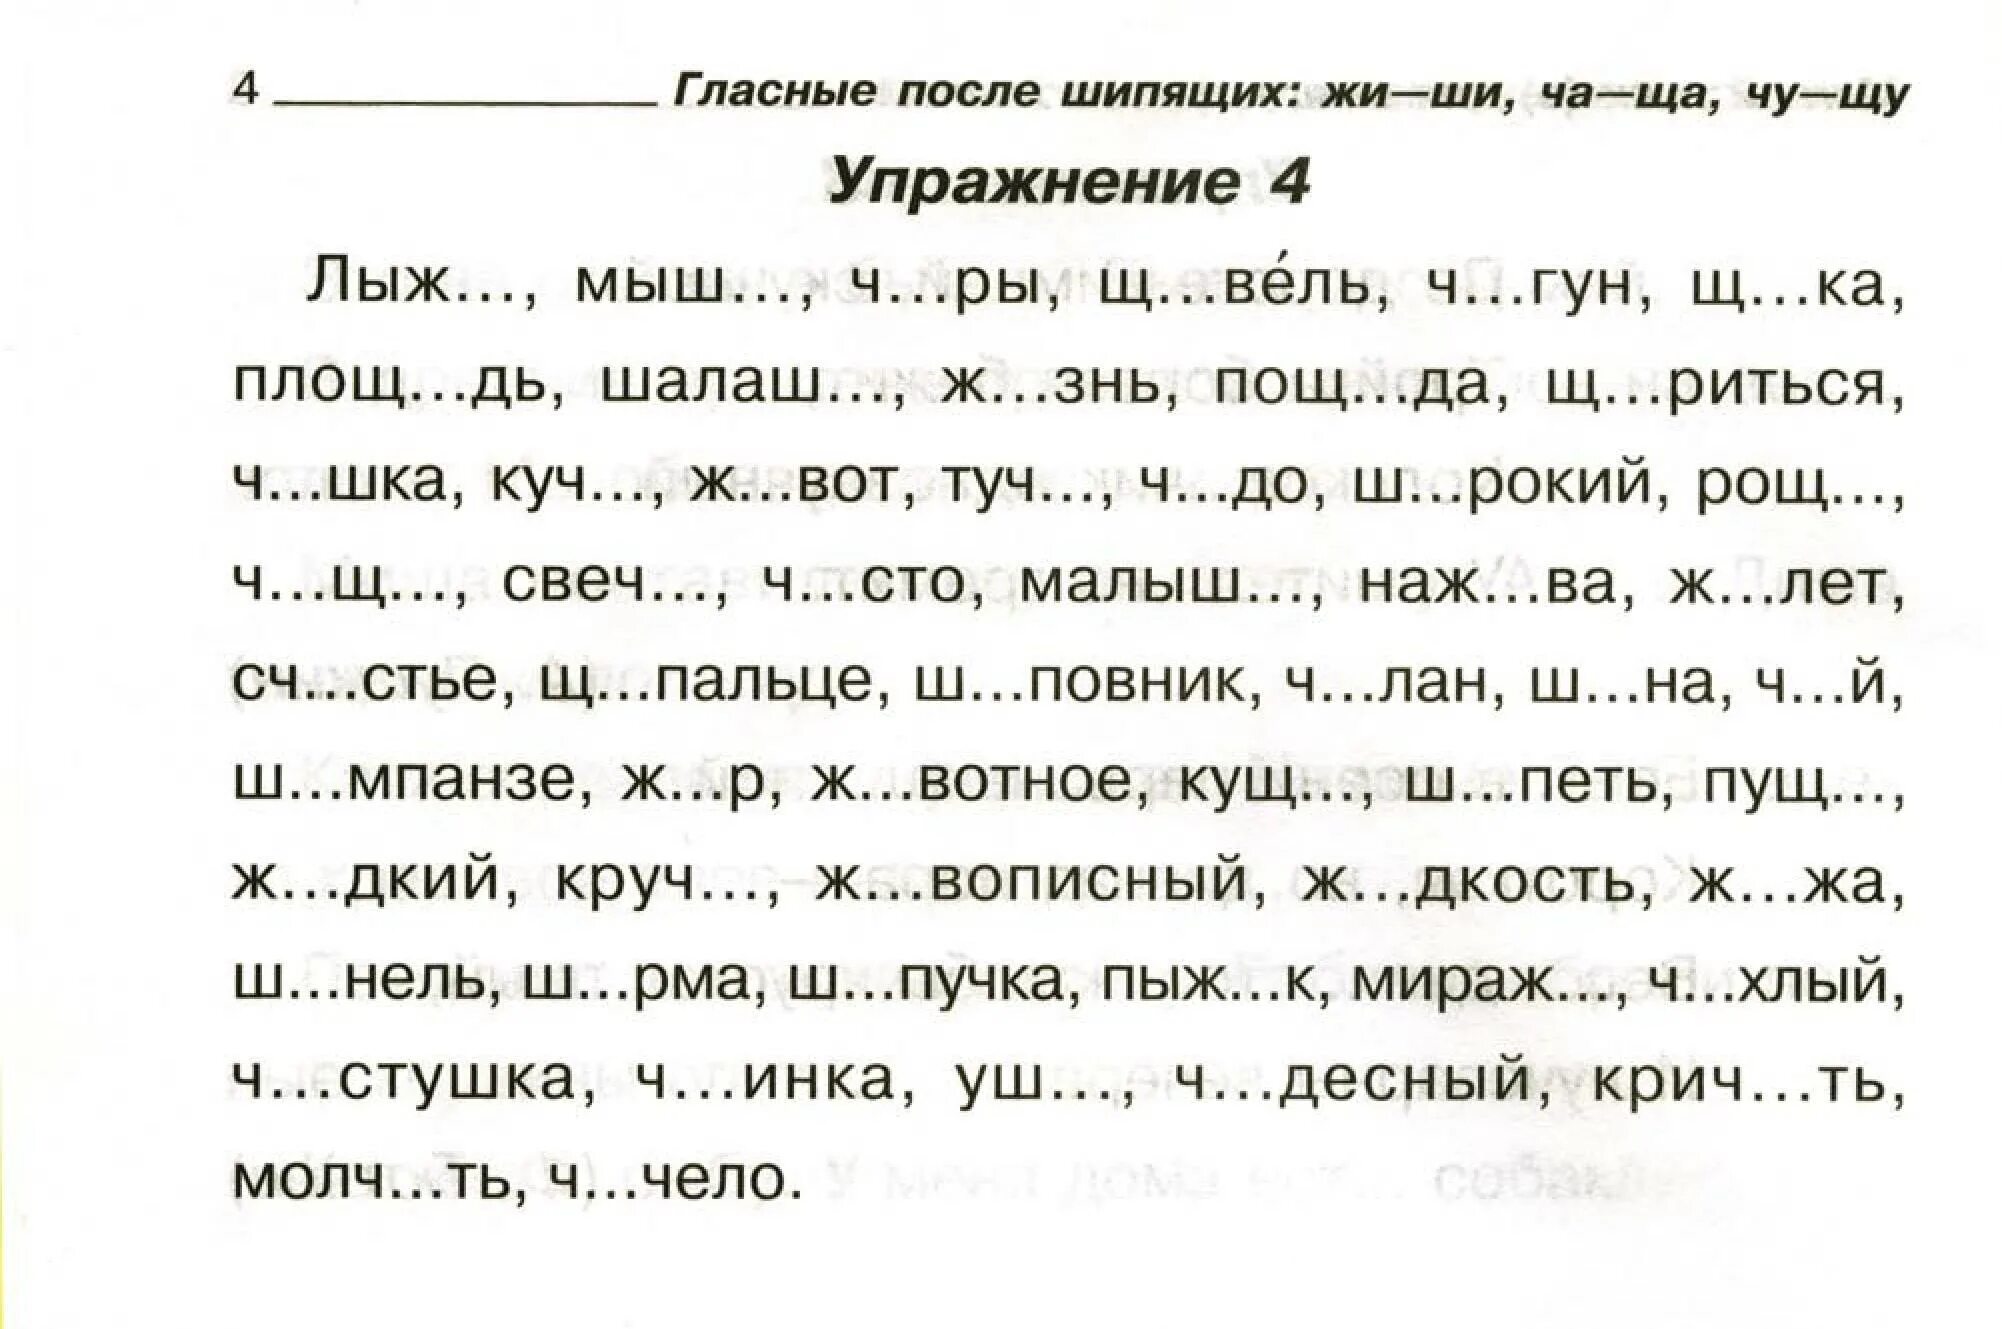 Задания по русскому языку 1 класс жи ши